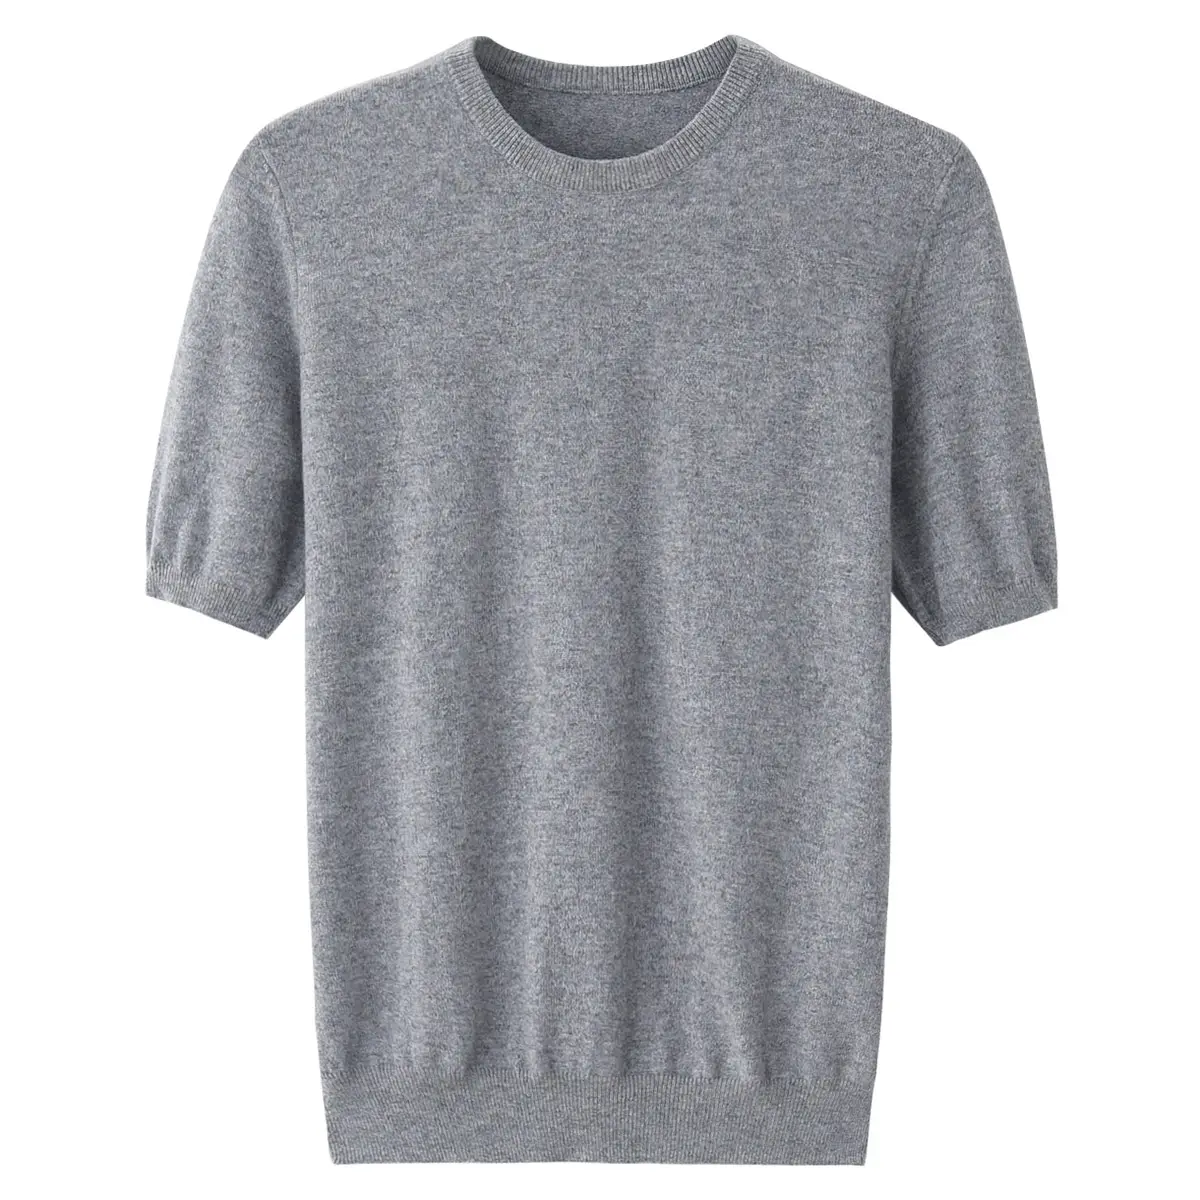 Neue Design 5 Kaschmir Gestrickte Stoff Crew Neck T-shirt 95 Baumwolle stil Für Männer im sommer